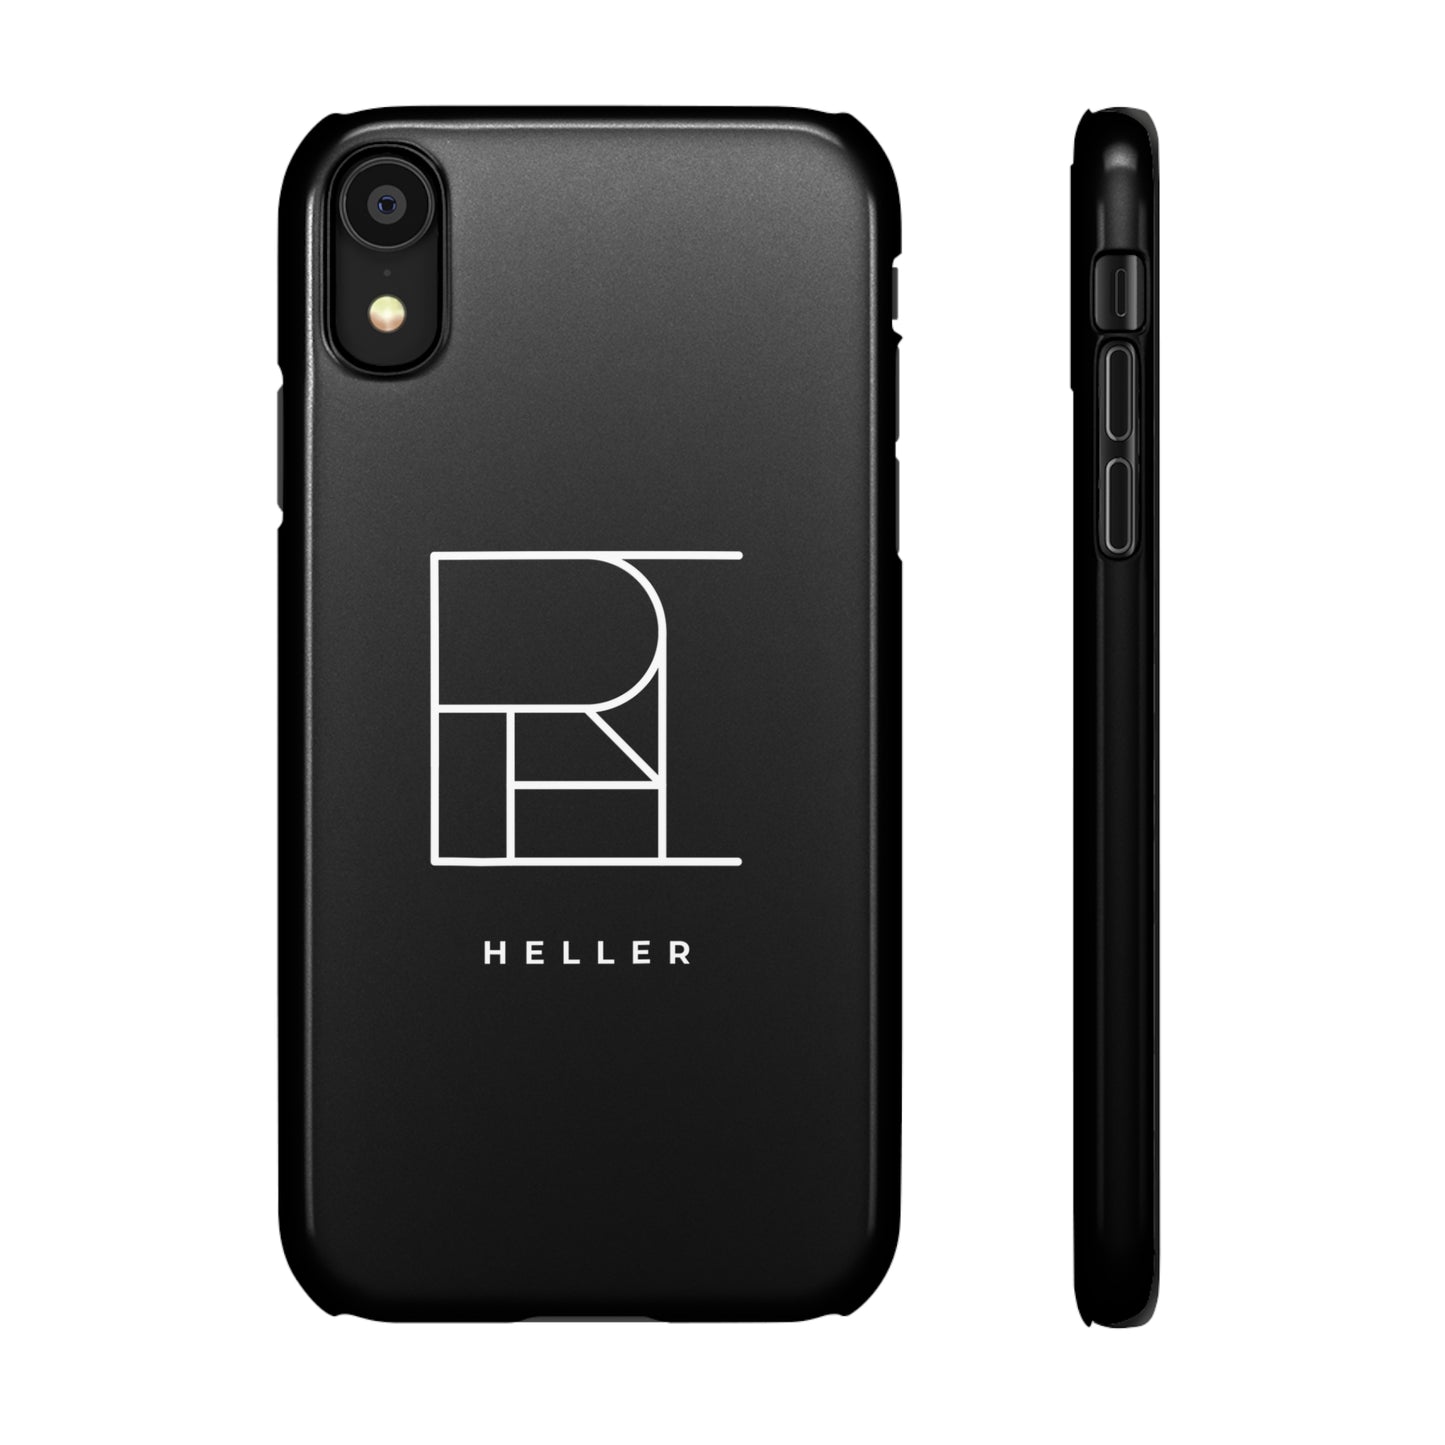 Heller - #FU4417915U - Snap Phone Cas